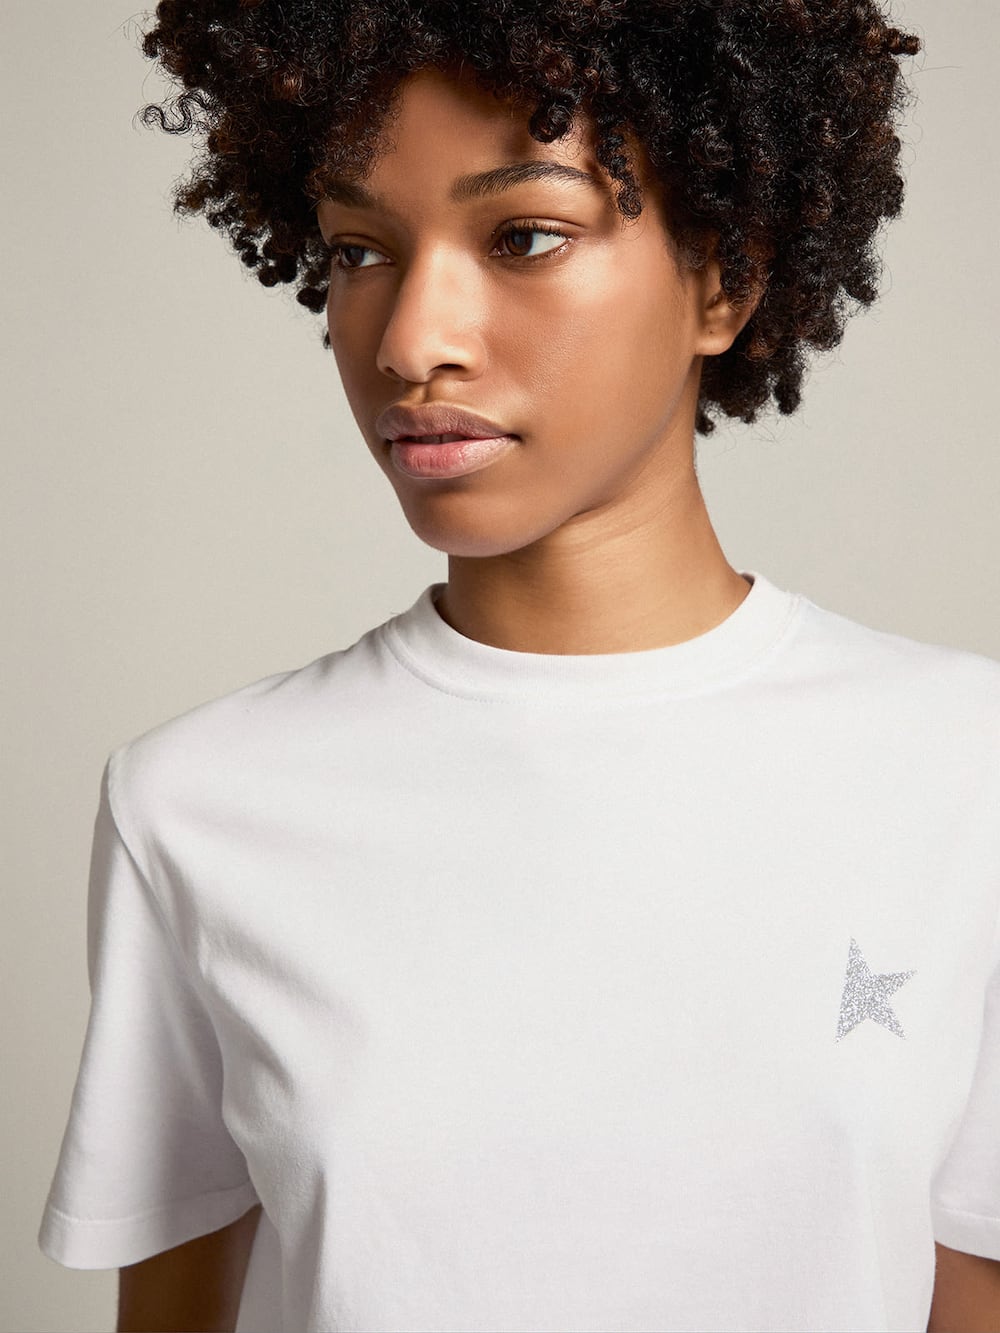 Golden Goose - T-shirt femme blanc avec étoile à paillettes argentées sur le devant in 